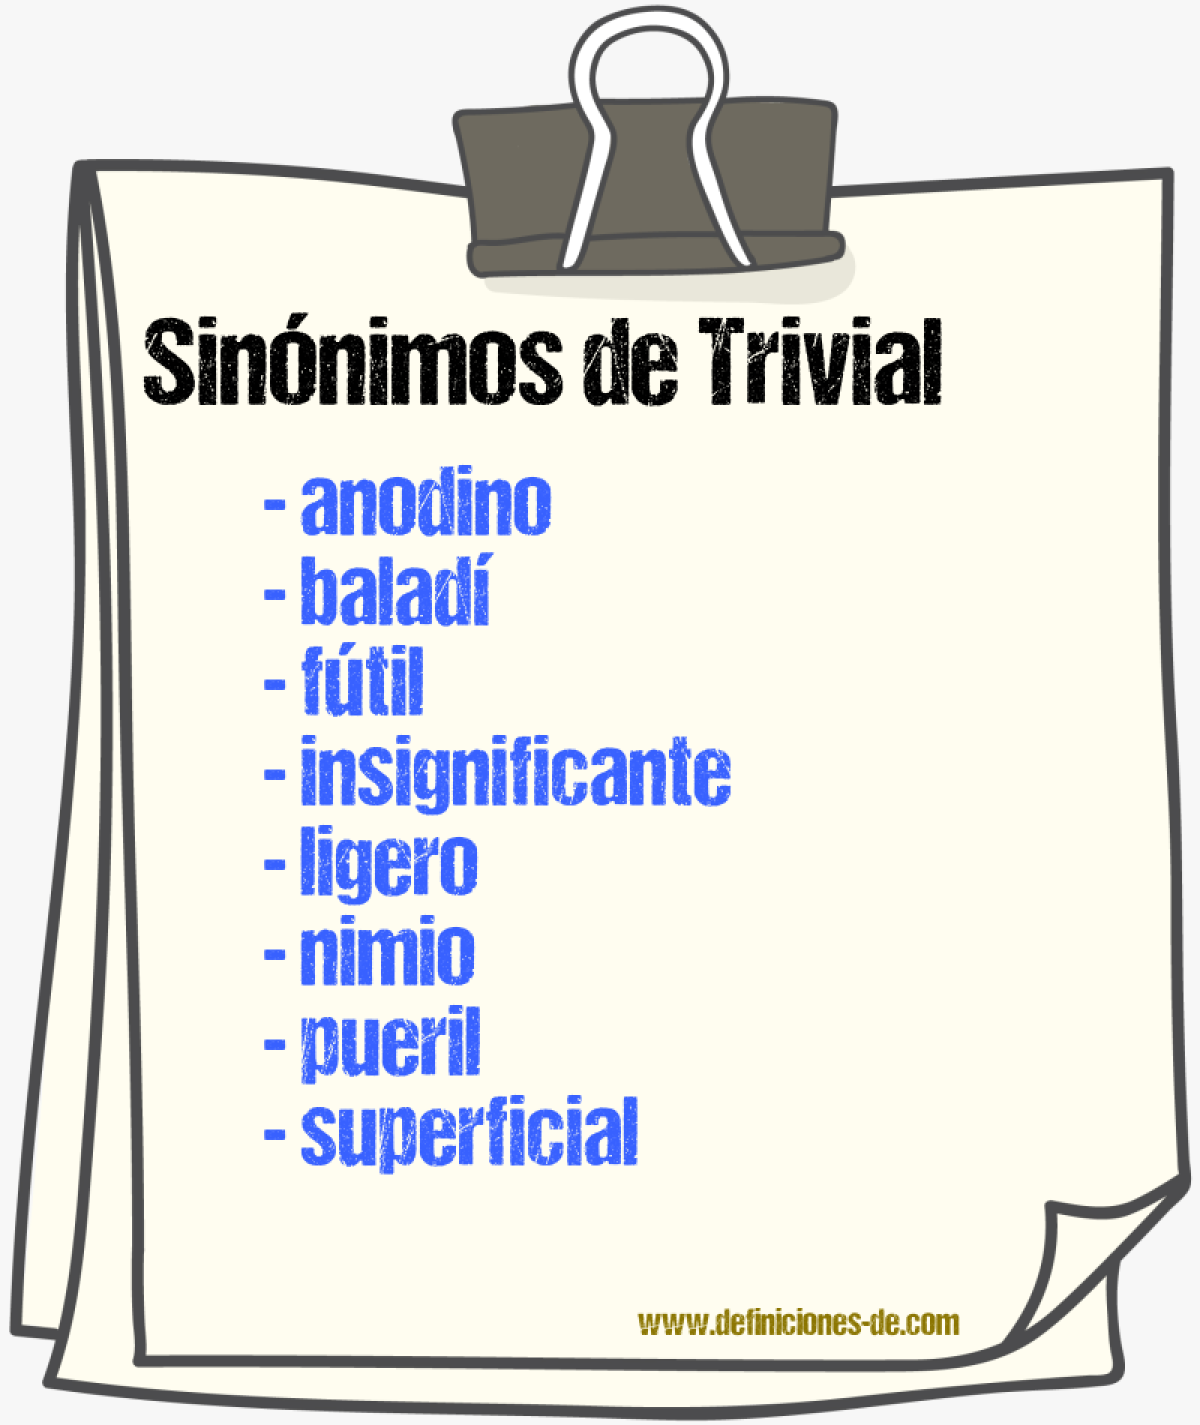 Sinónimos de trivial